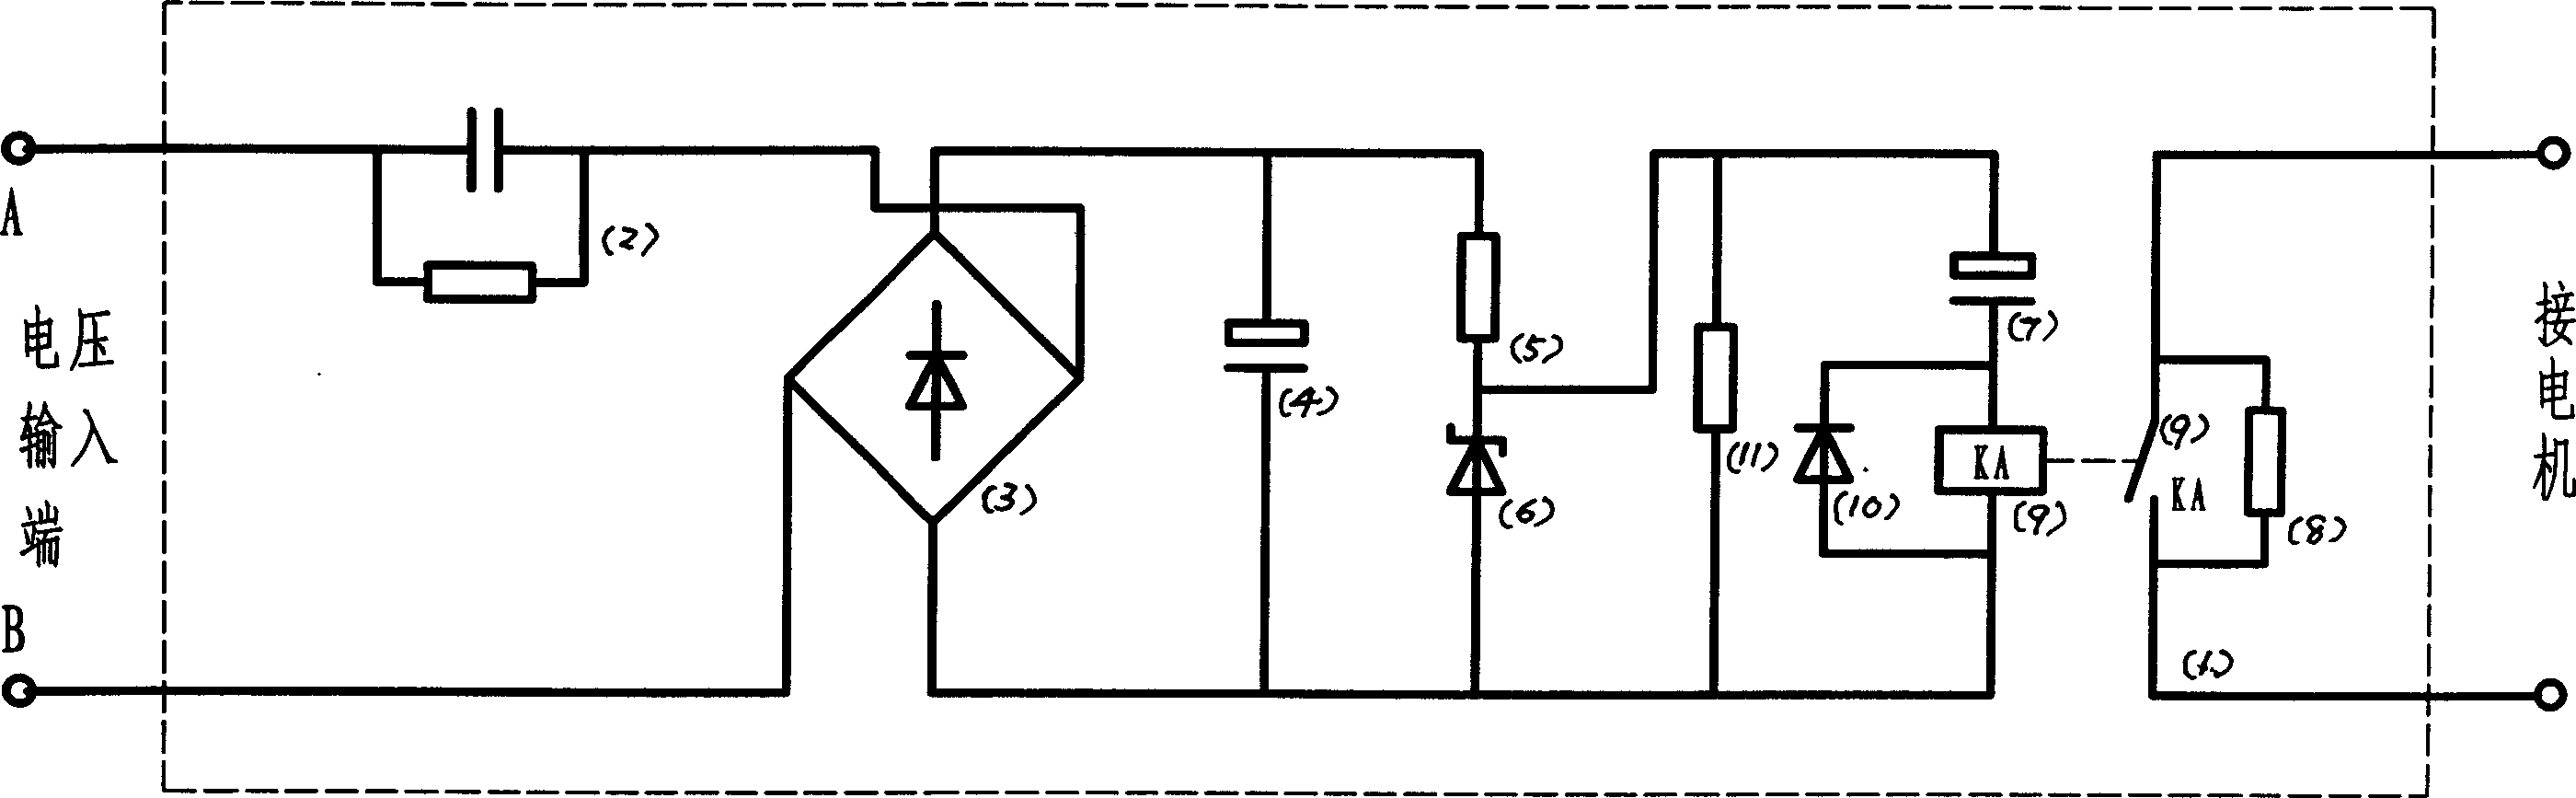 Single-phase AC motor starting method